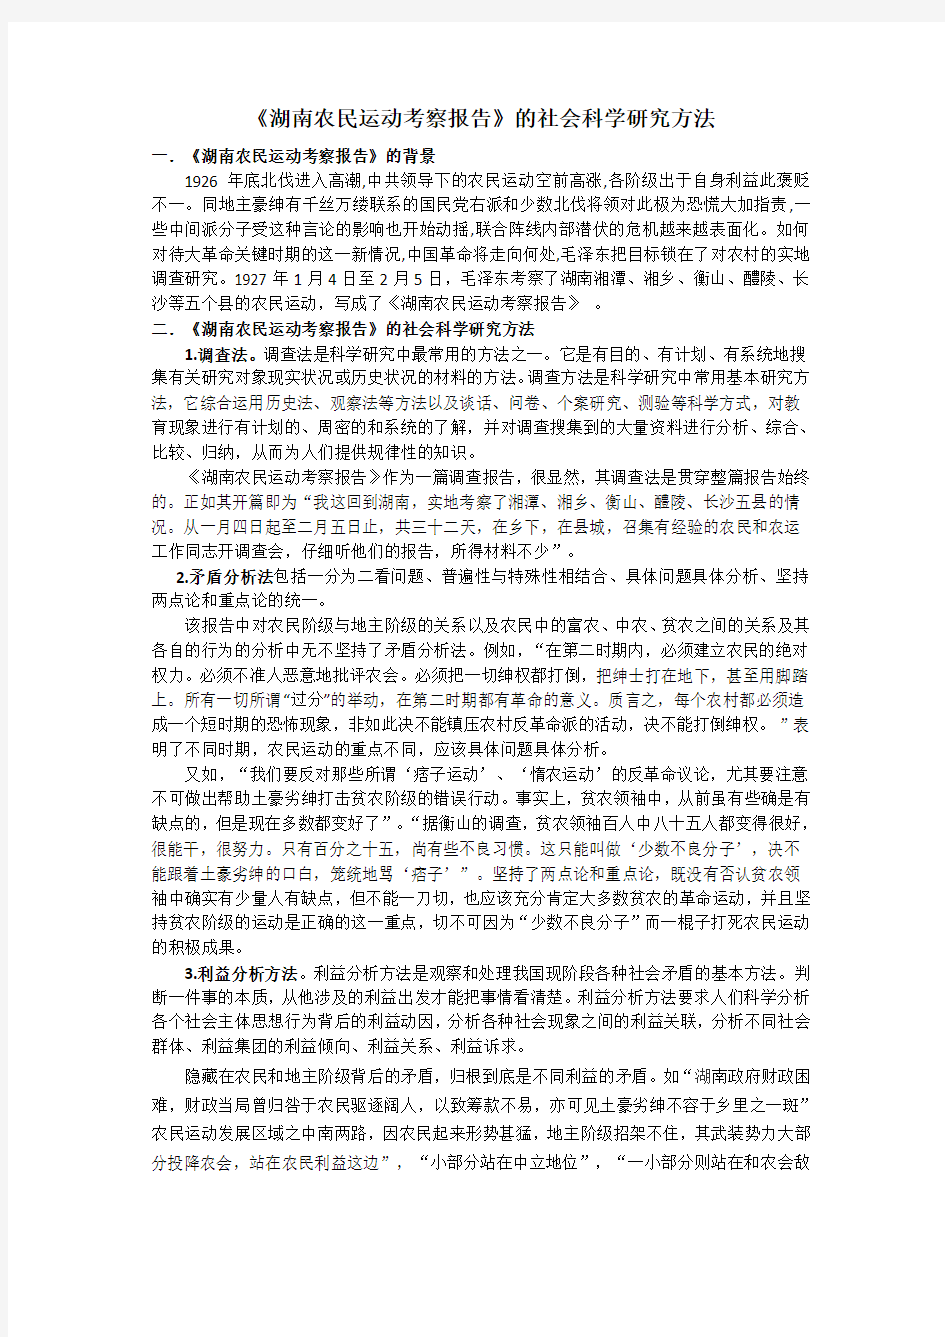 《湖南农民运动考察报告》的社会科学研究方法